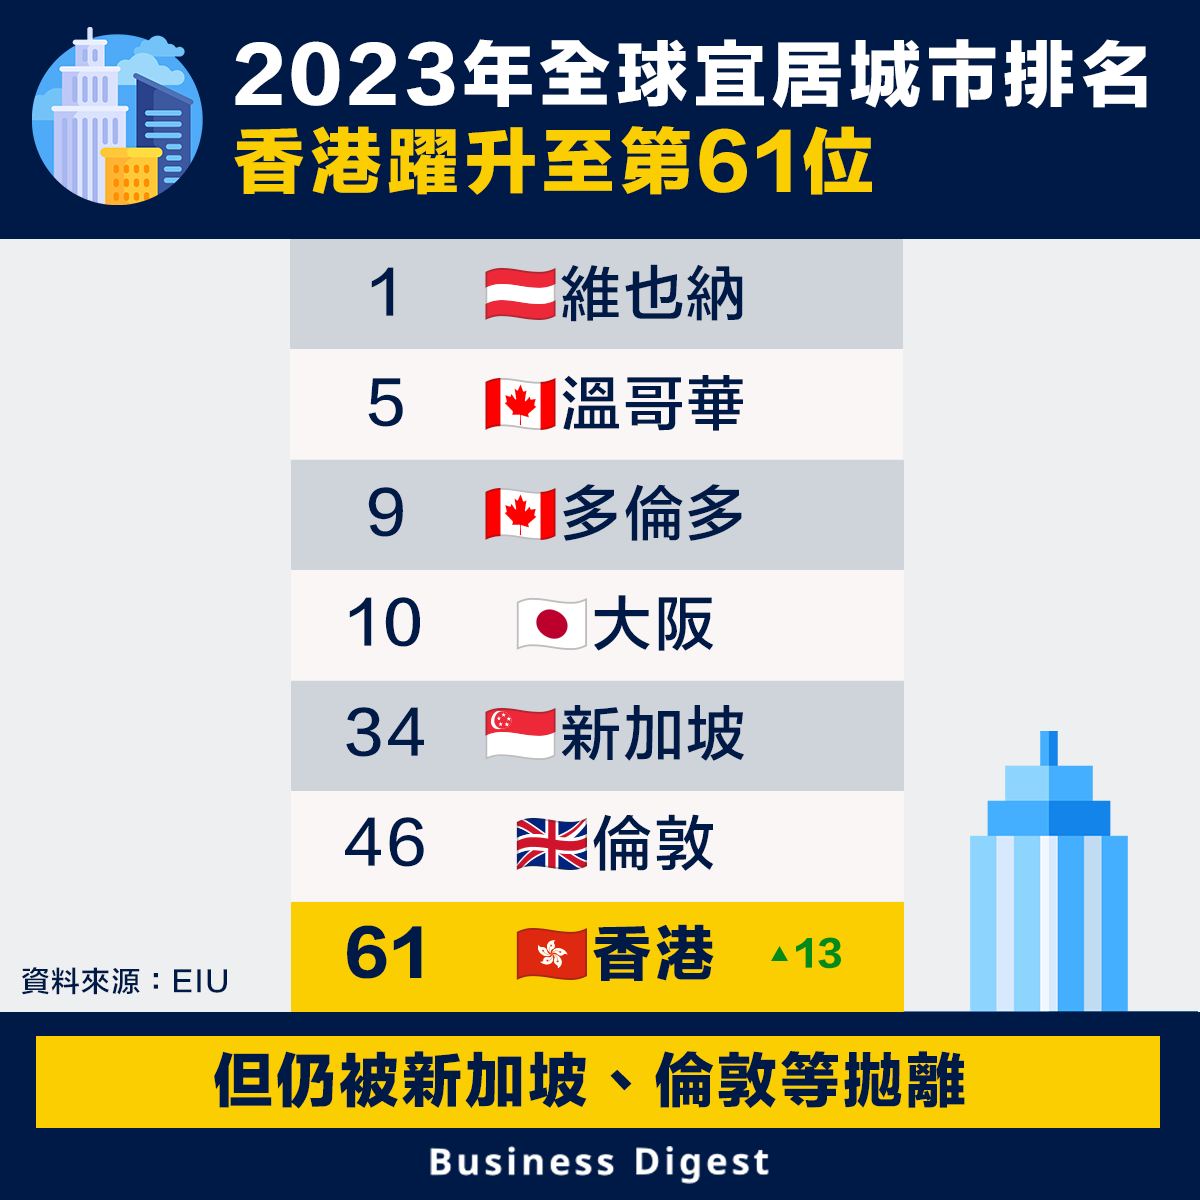 2023年全球宜居城市排名，香港躍升至第61位